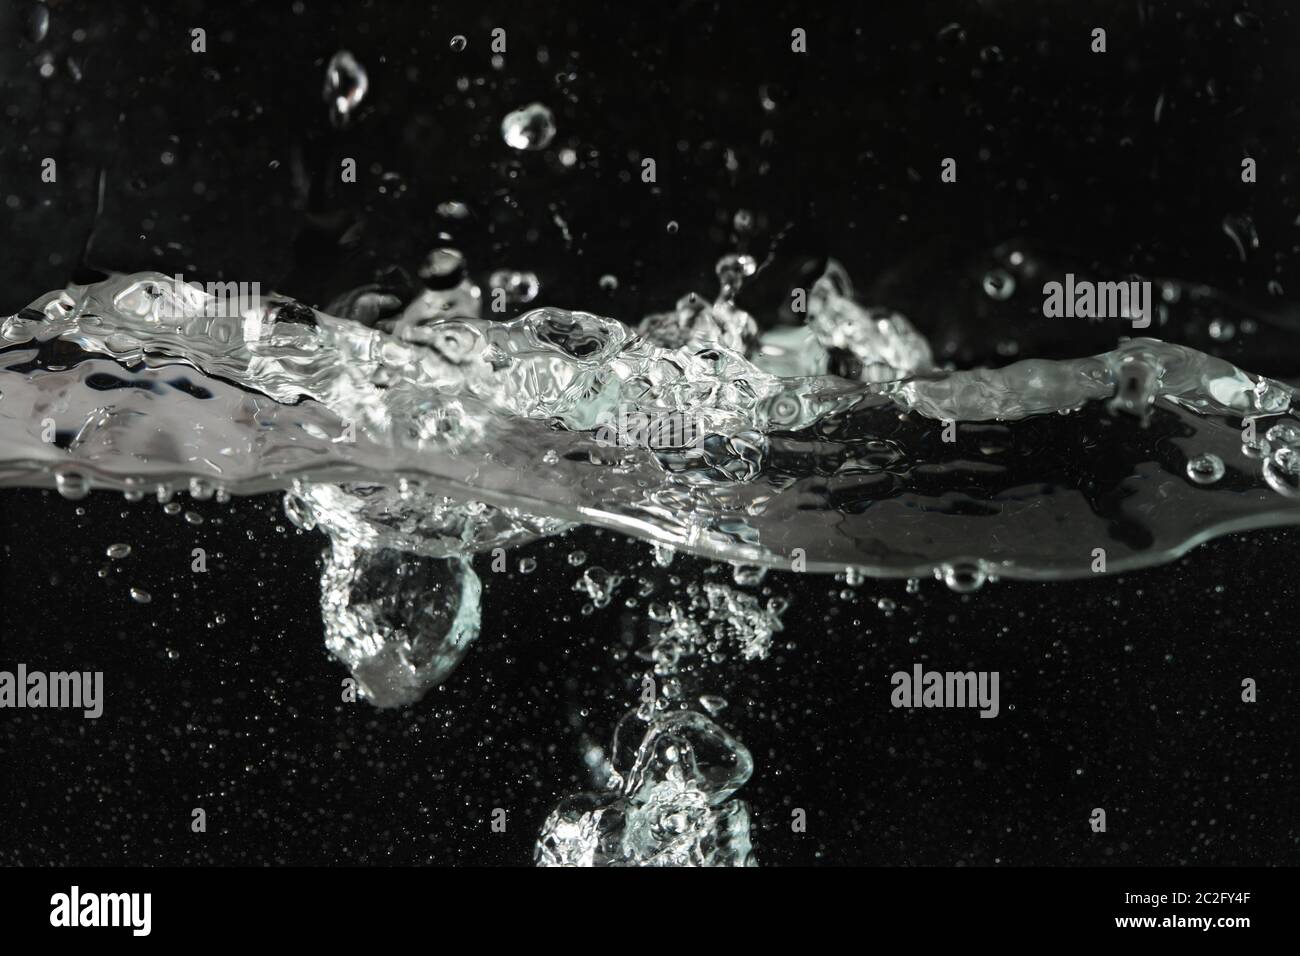 Wasser spritzt, wenn es in Aquarienbehälter gegossen wird, schwarzer Hintergrund Stockfoto